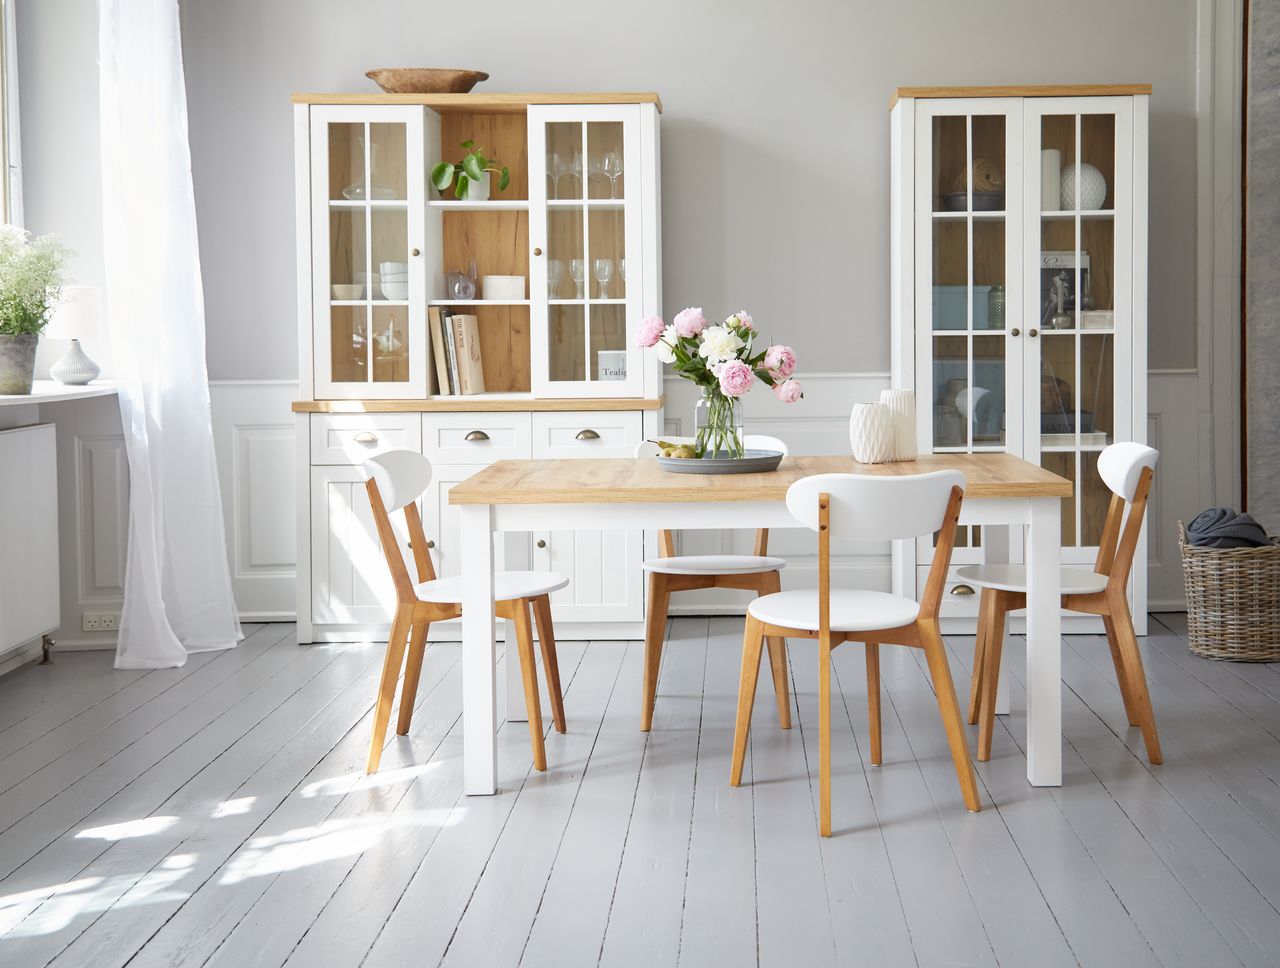 Bộ bàn ghế là điểm nhấn nổi bật giúp trang trí phòng ăn đẹp, hiện đại và tinh tế